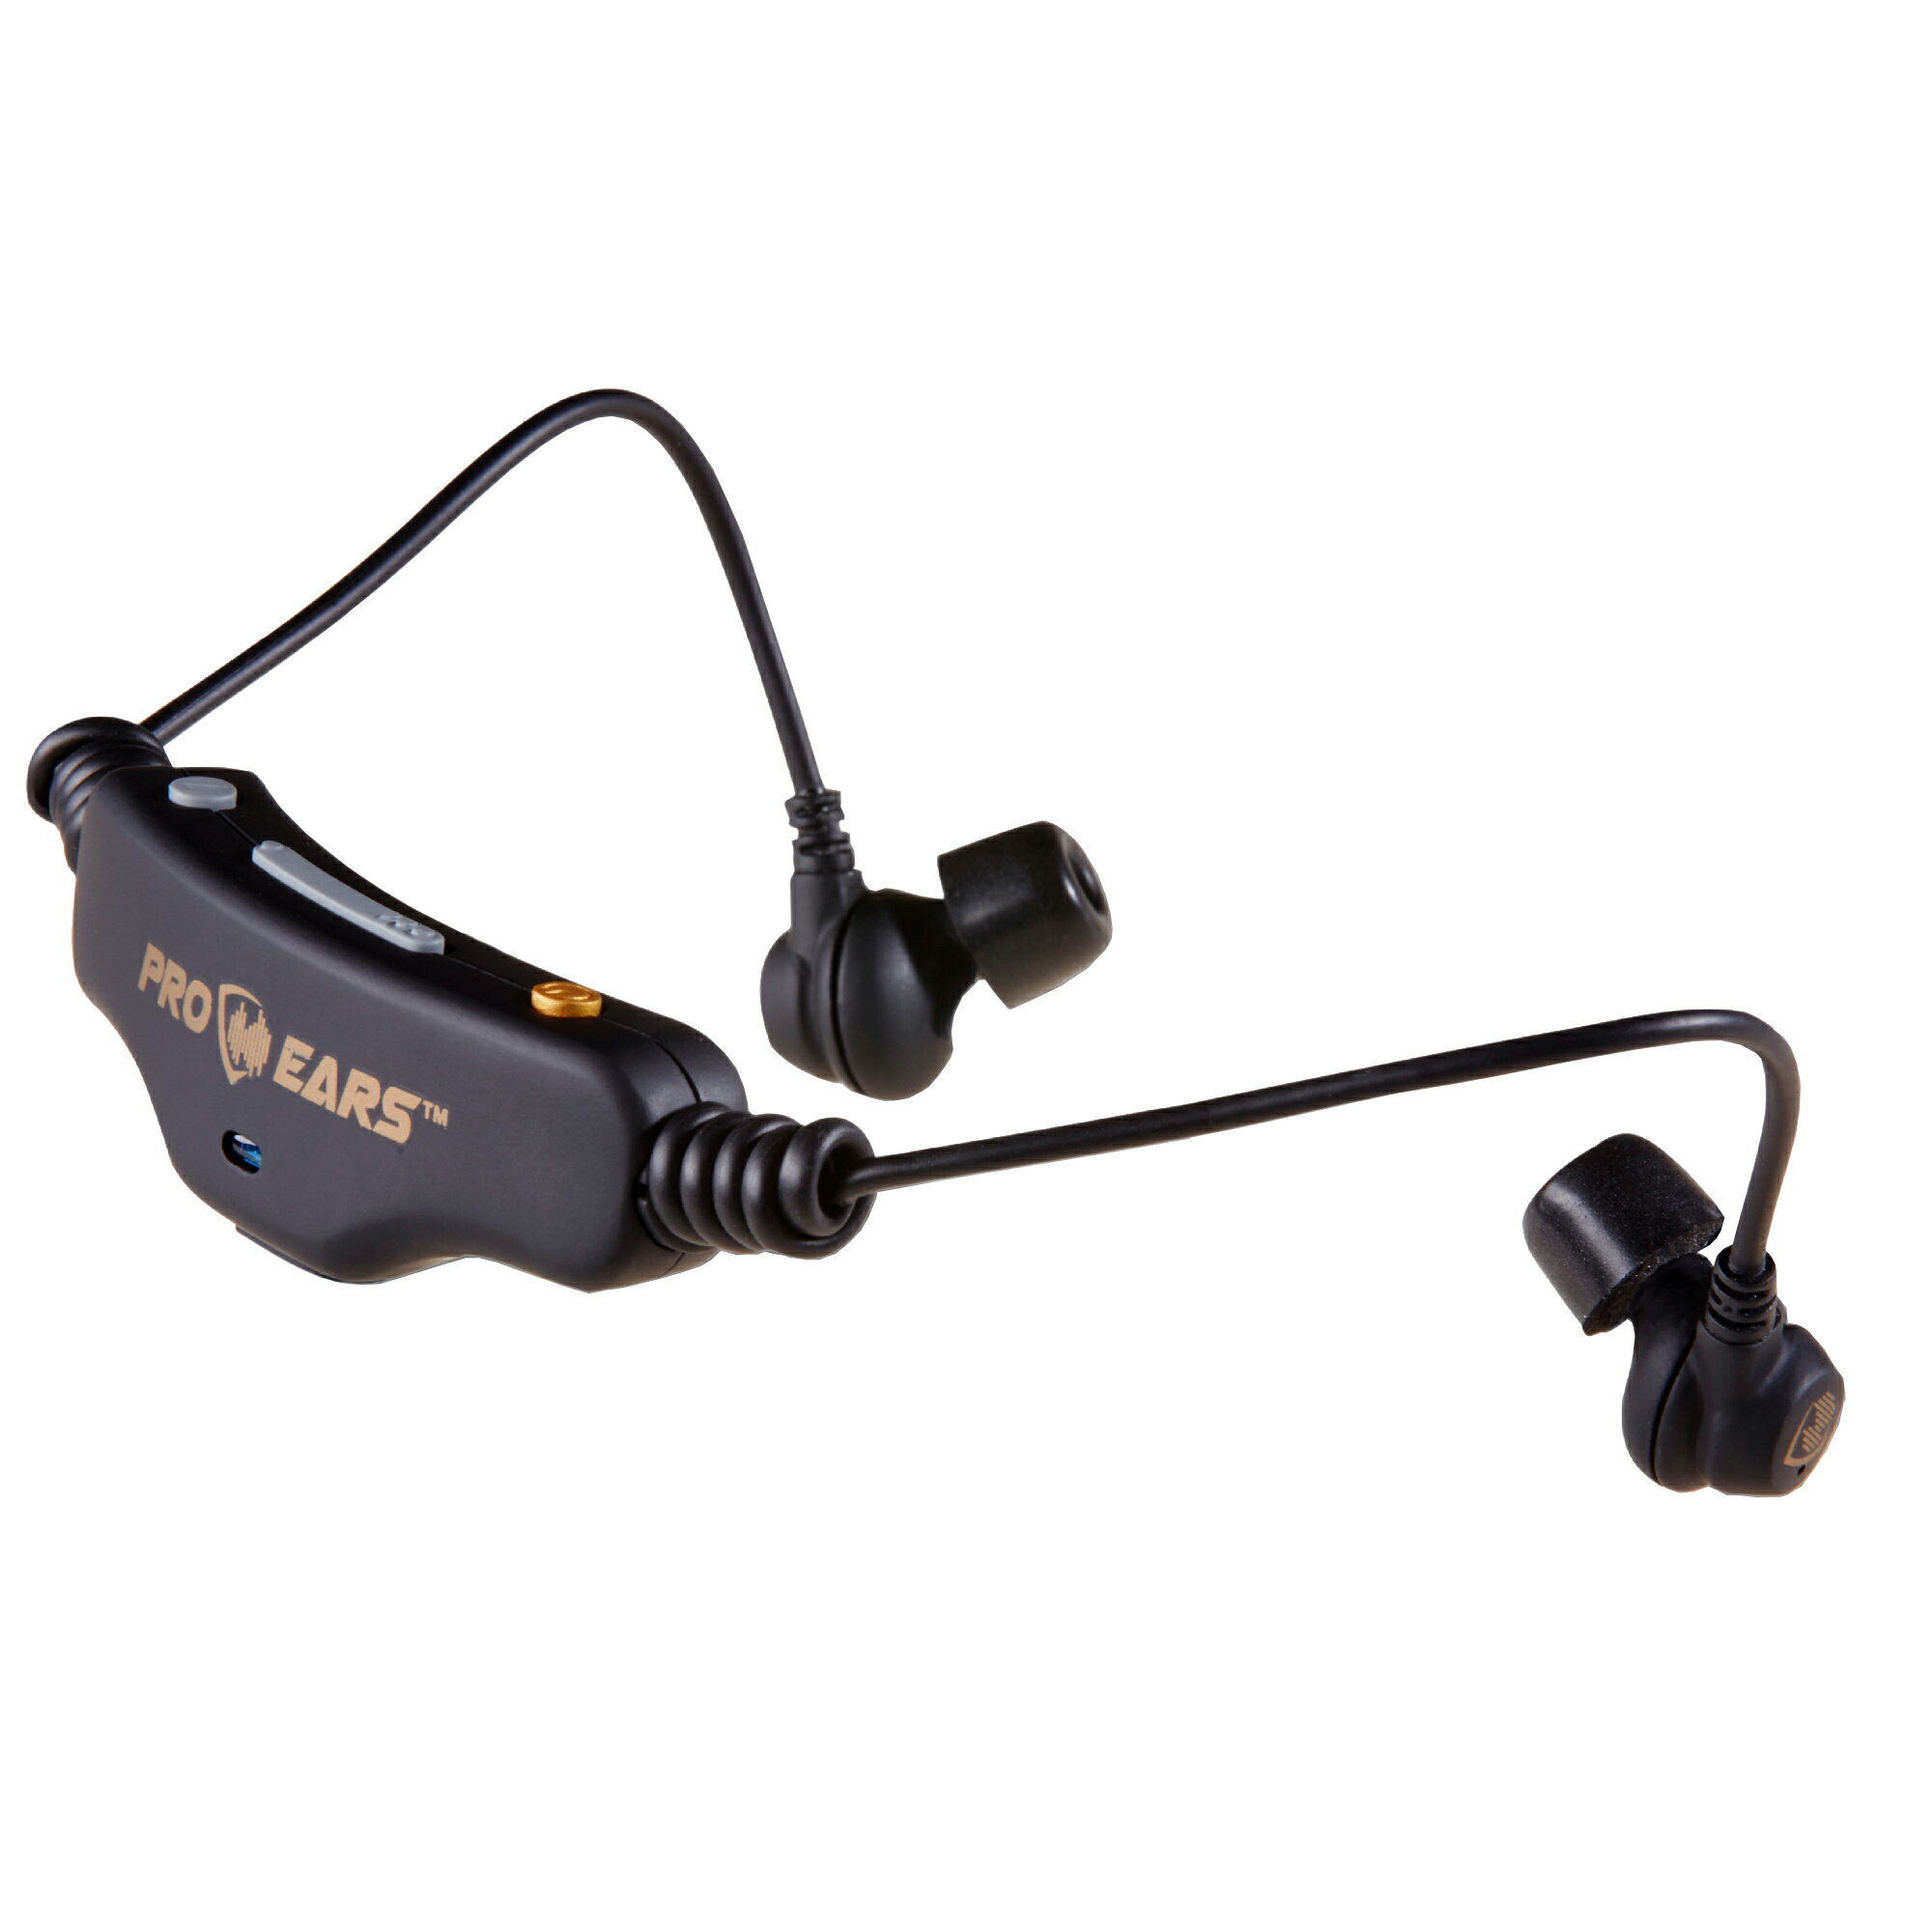 Pro Ears 電子聴覚保護イヤホン Stealth 28 (ステルス28) HTBT 聴覚保護具/集音器/ワイヤレスイヤホン 3in1 Bluetooth対応